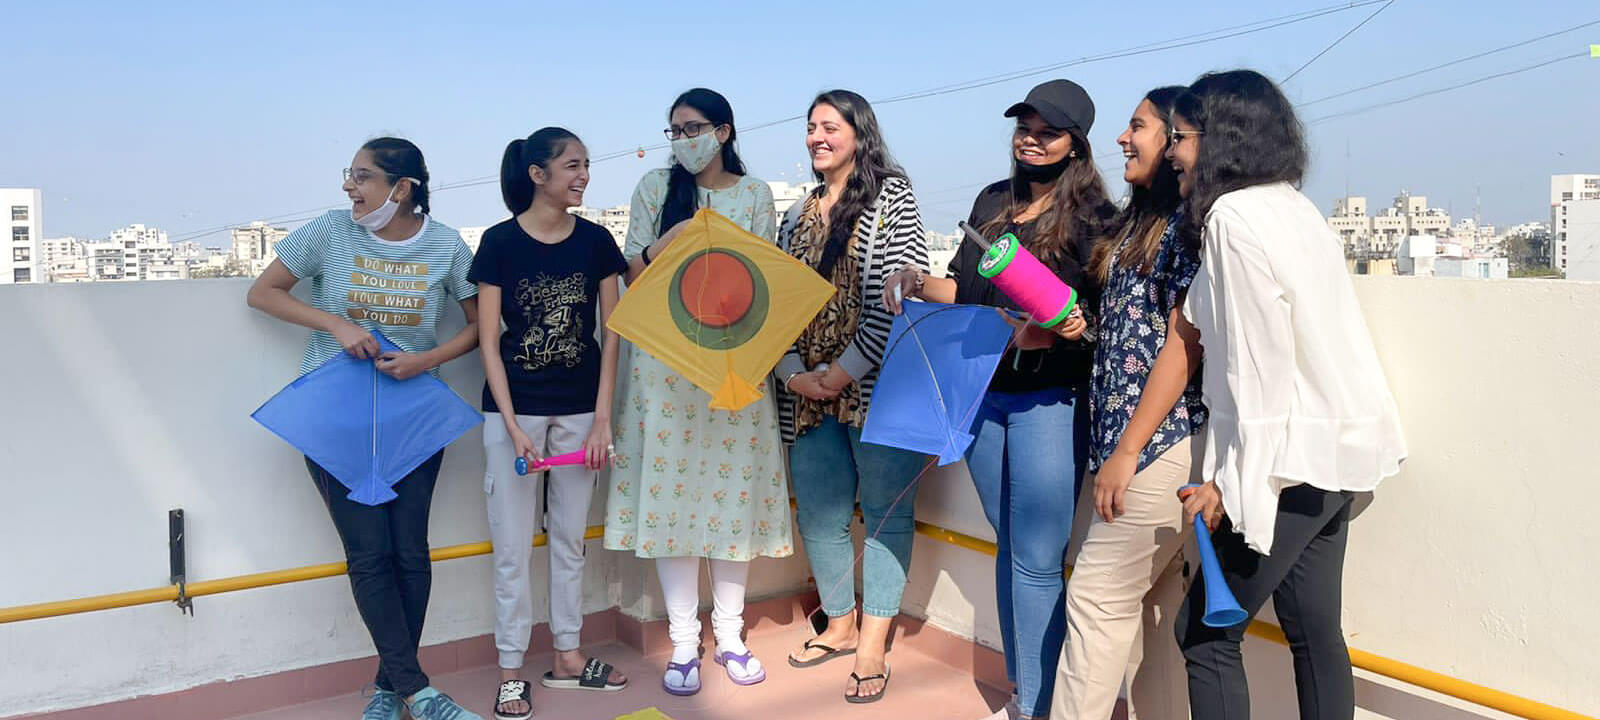 Girls are celebrating kite festival|FLH